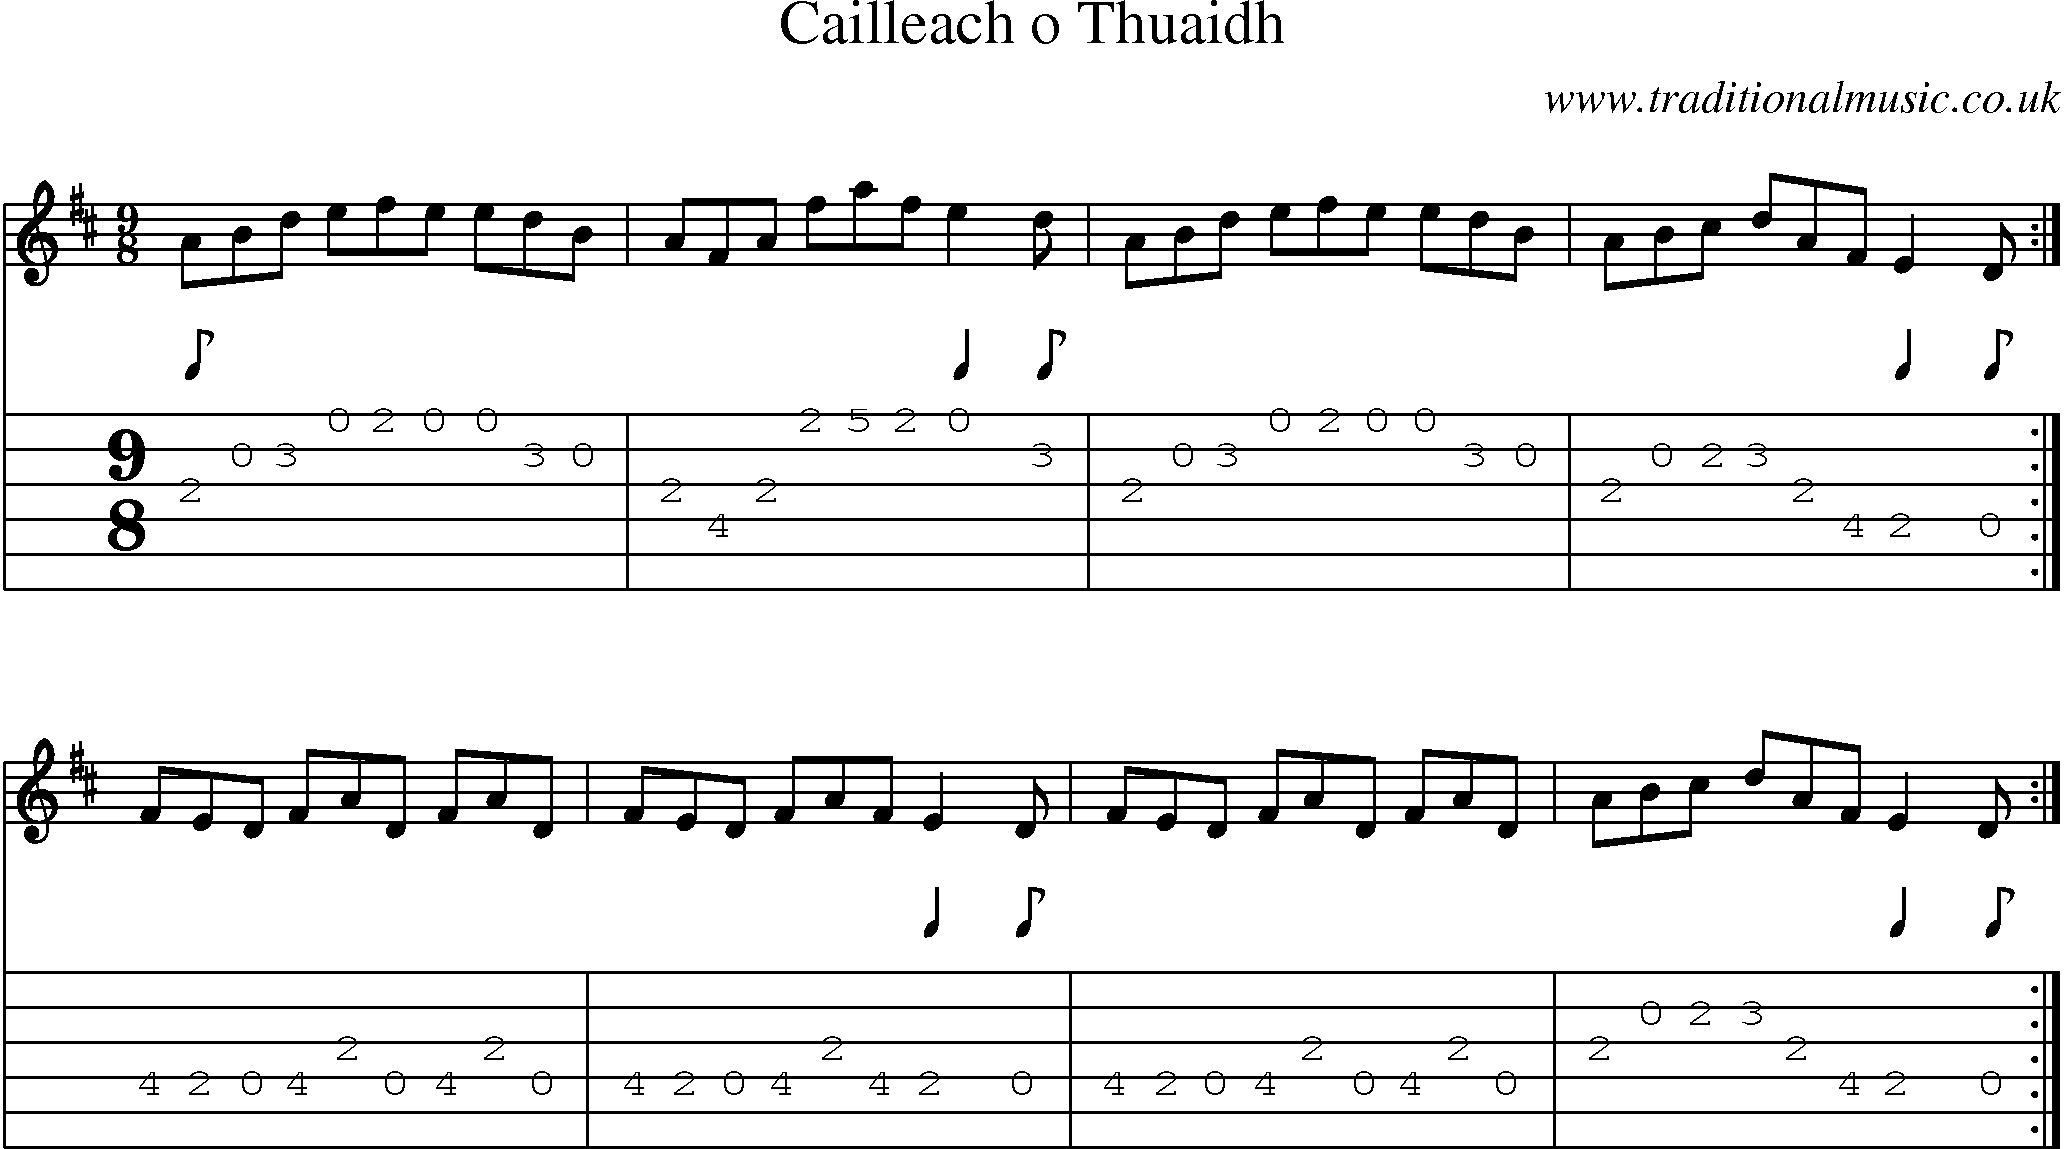 Music Score and Guitar Tabs for Cailleach O Thuaidh